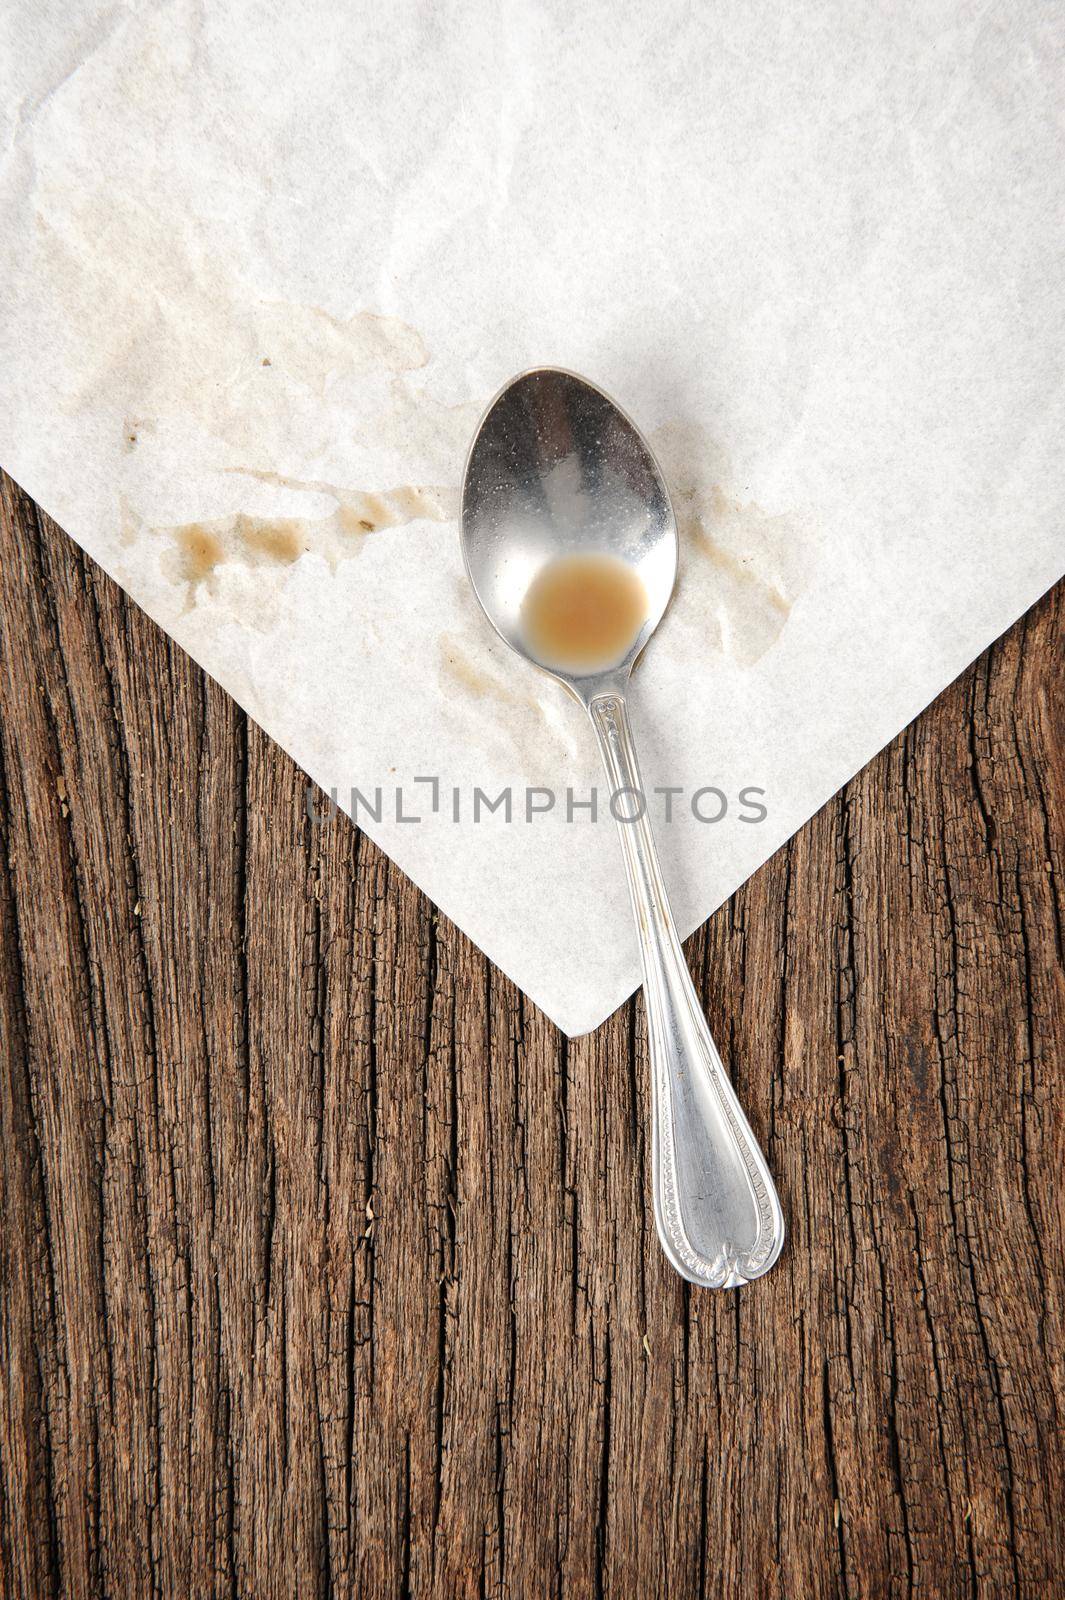 teaspoon by norgal